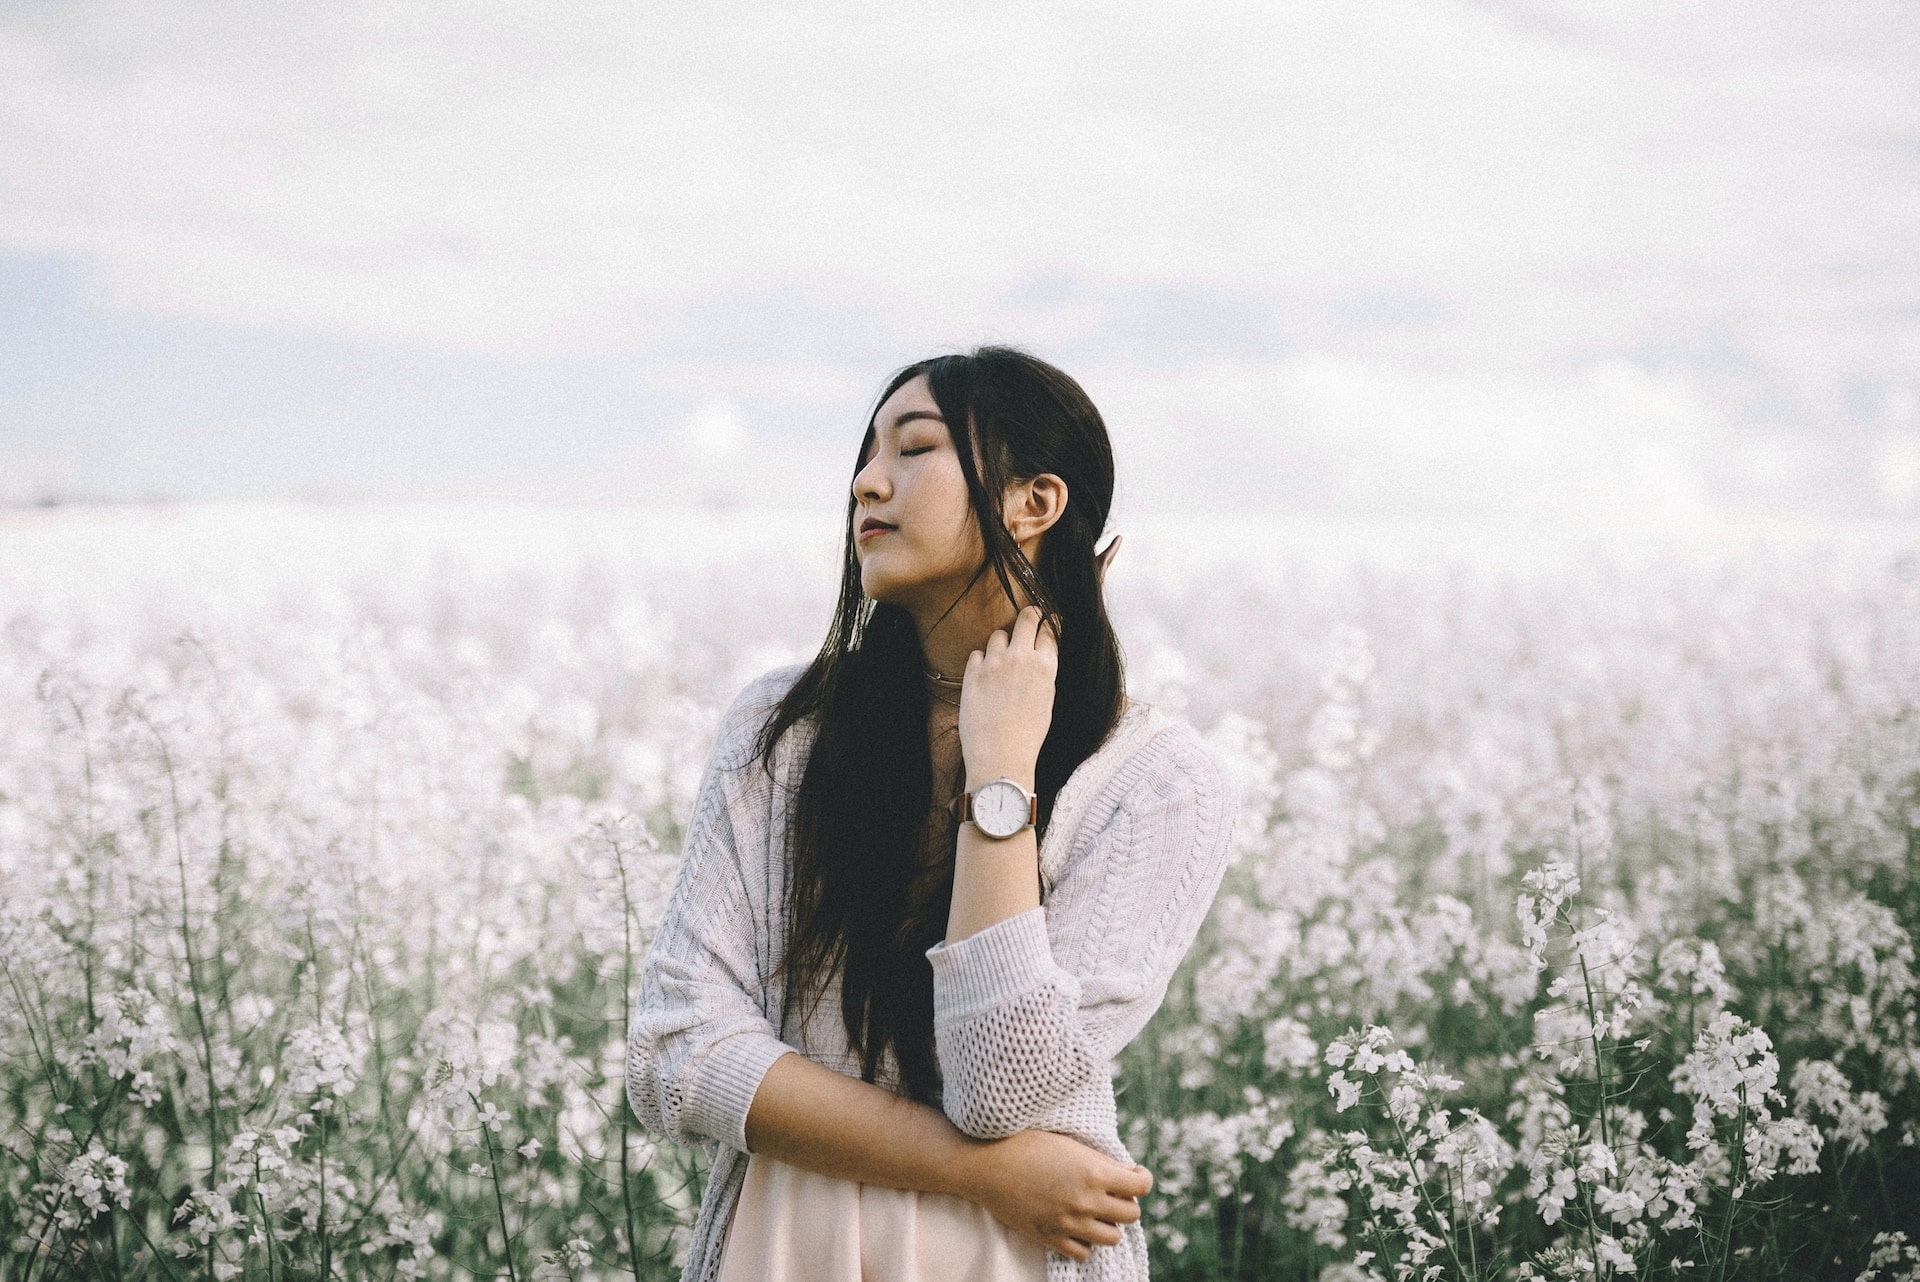 lady standing in a field of flowers wearing a wristwatch